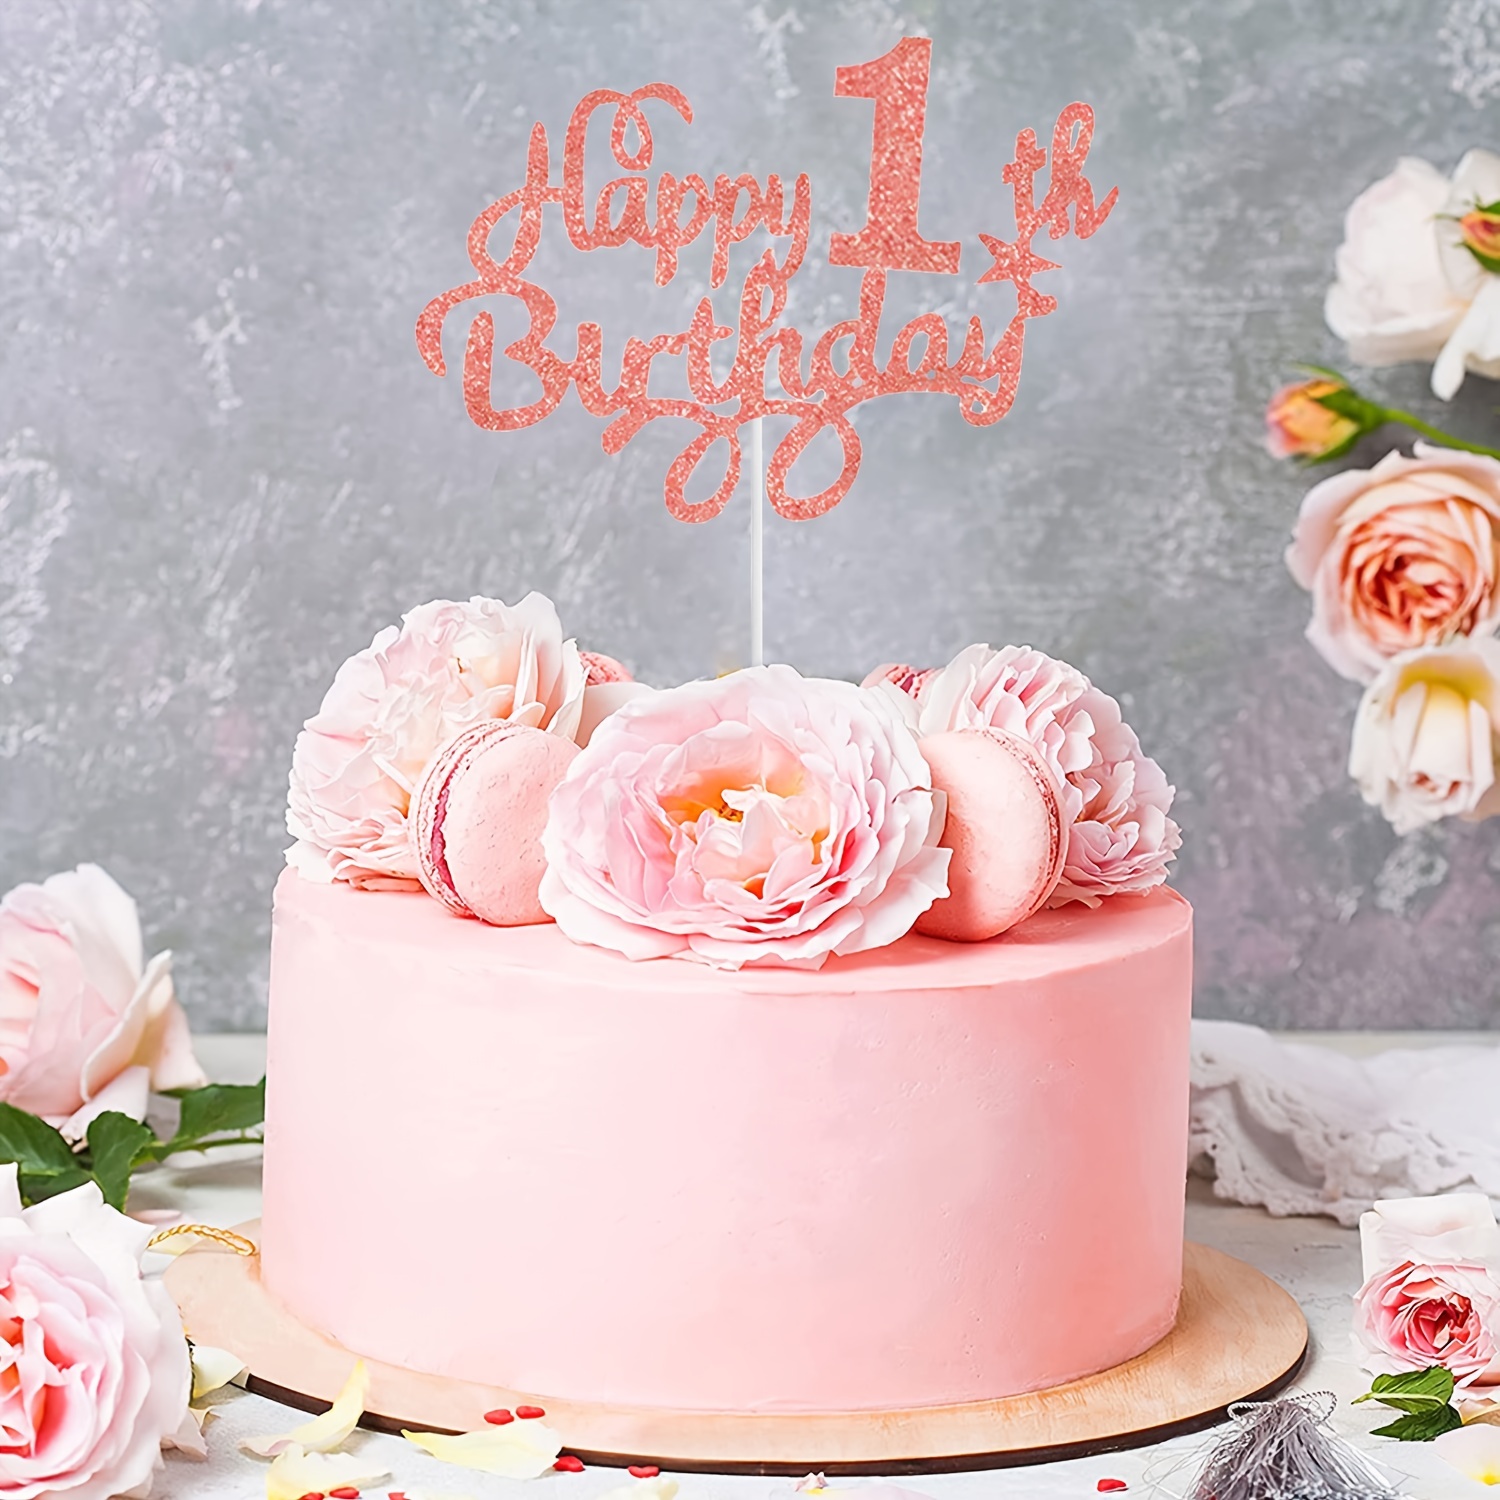 happy birthday lady cake